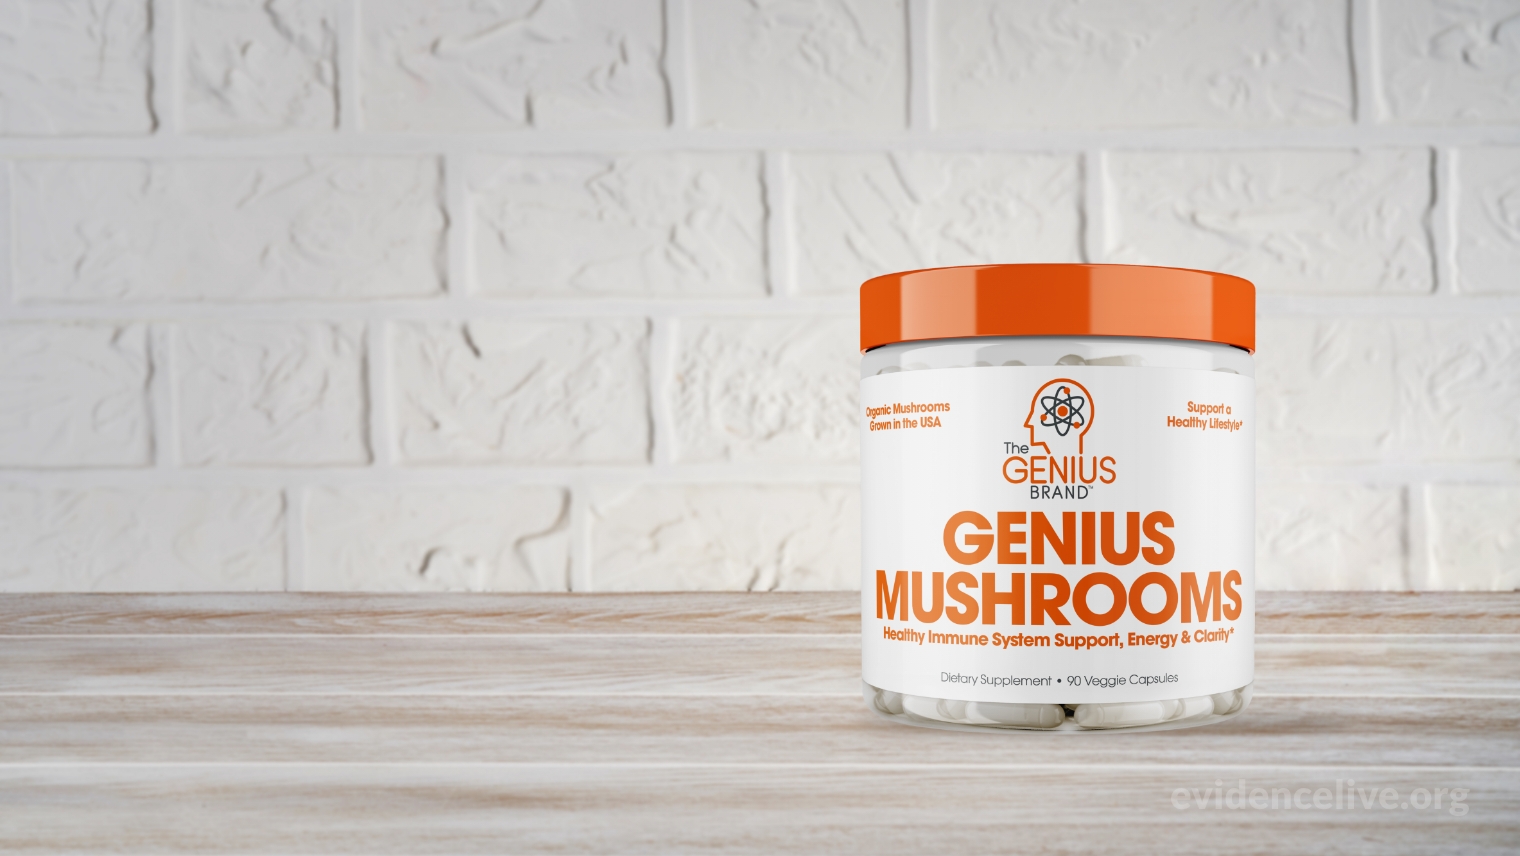 What is Genius Mushrooms